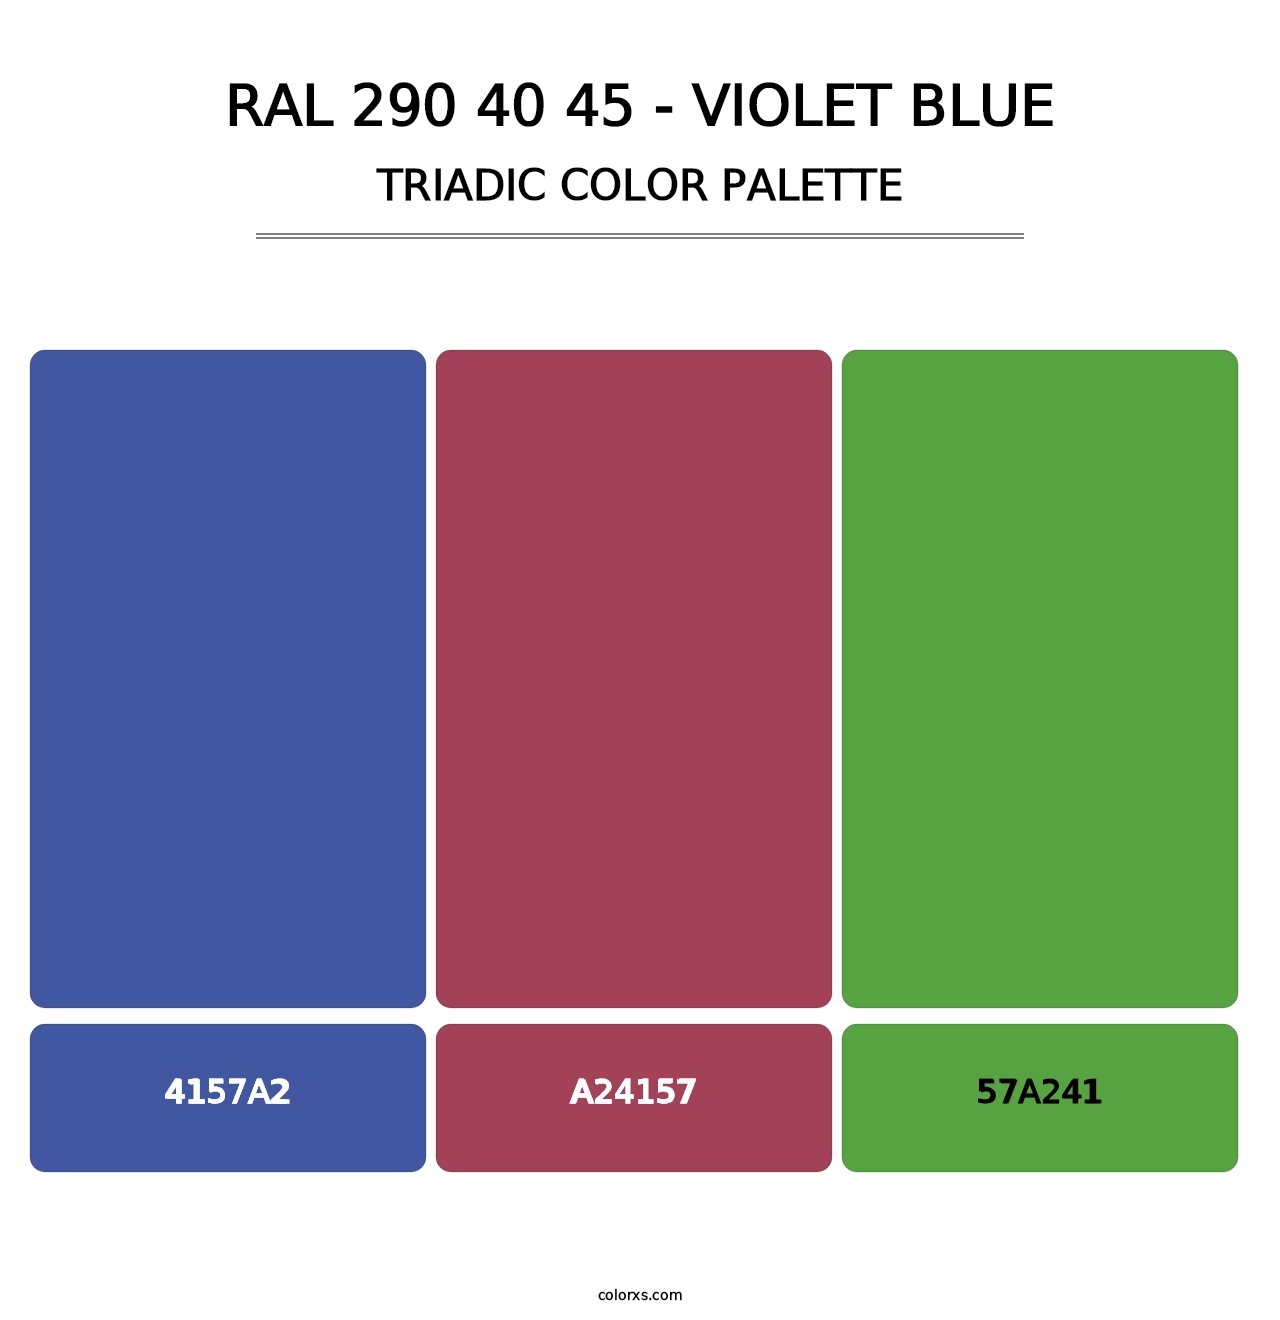 RAL 290 40 45 - Violet Blue - Triadic Color Palette